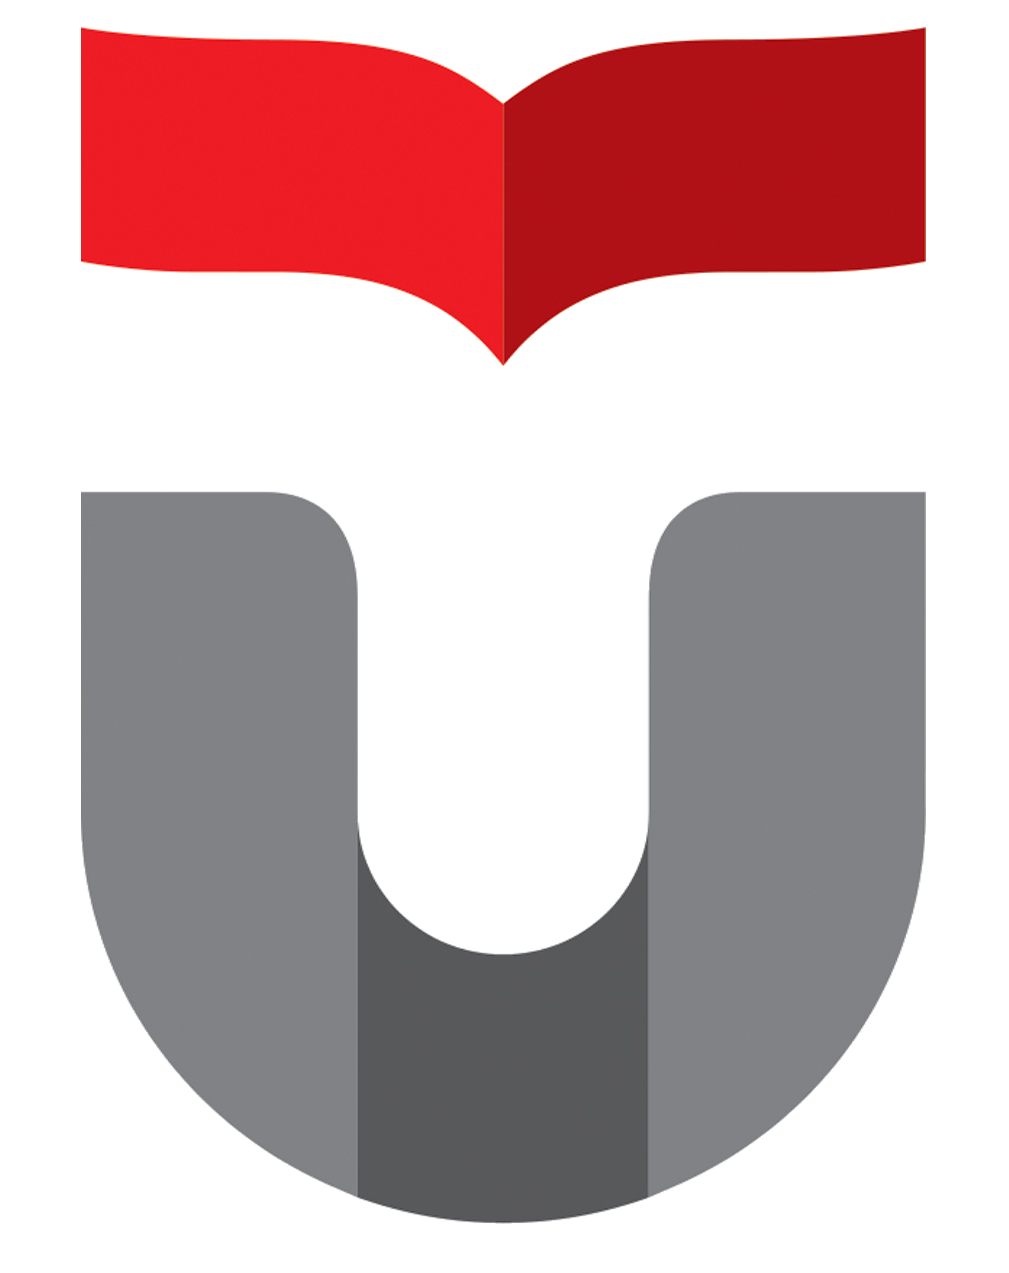 logo telkom university